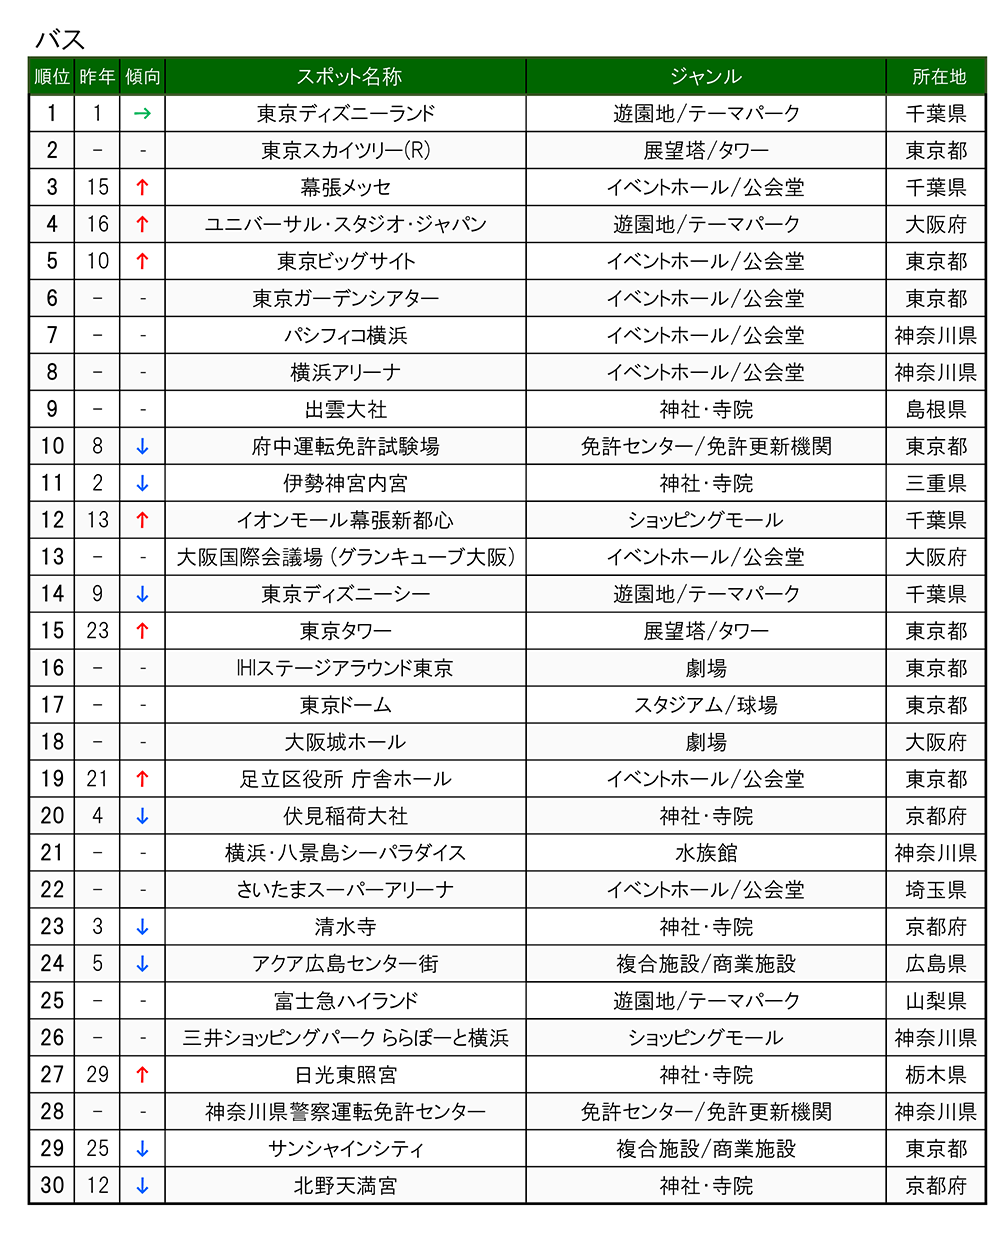 2021ランキング_交通手段別_バス_TOP30.png